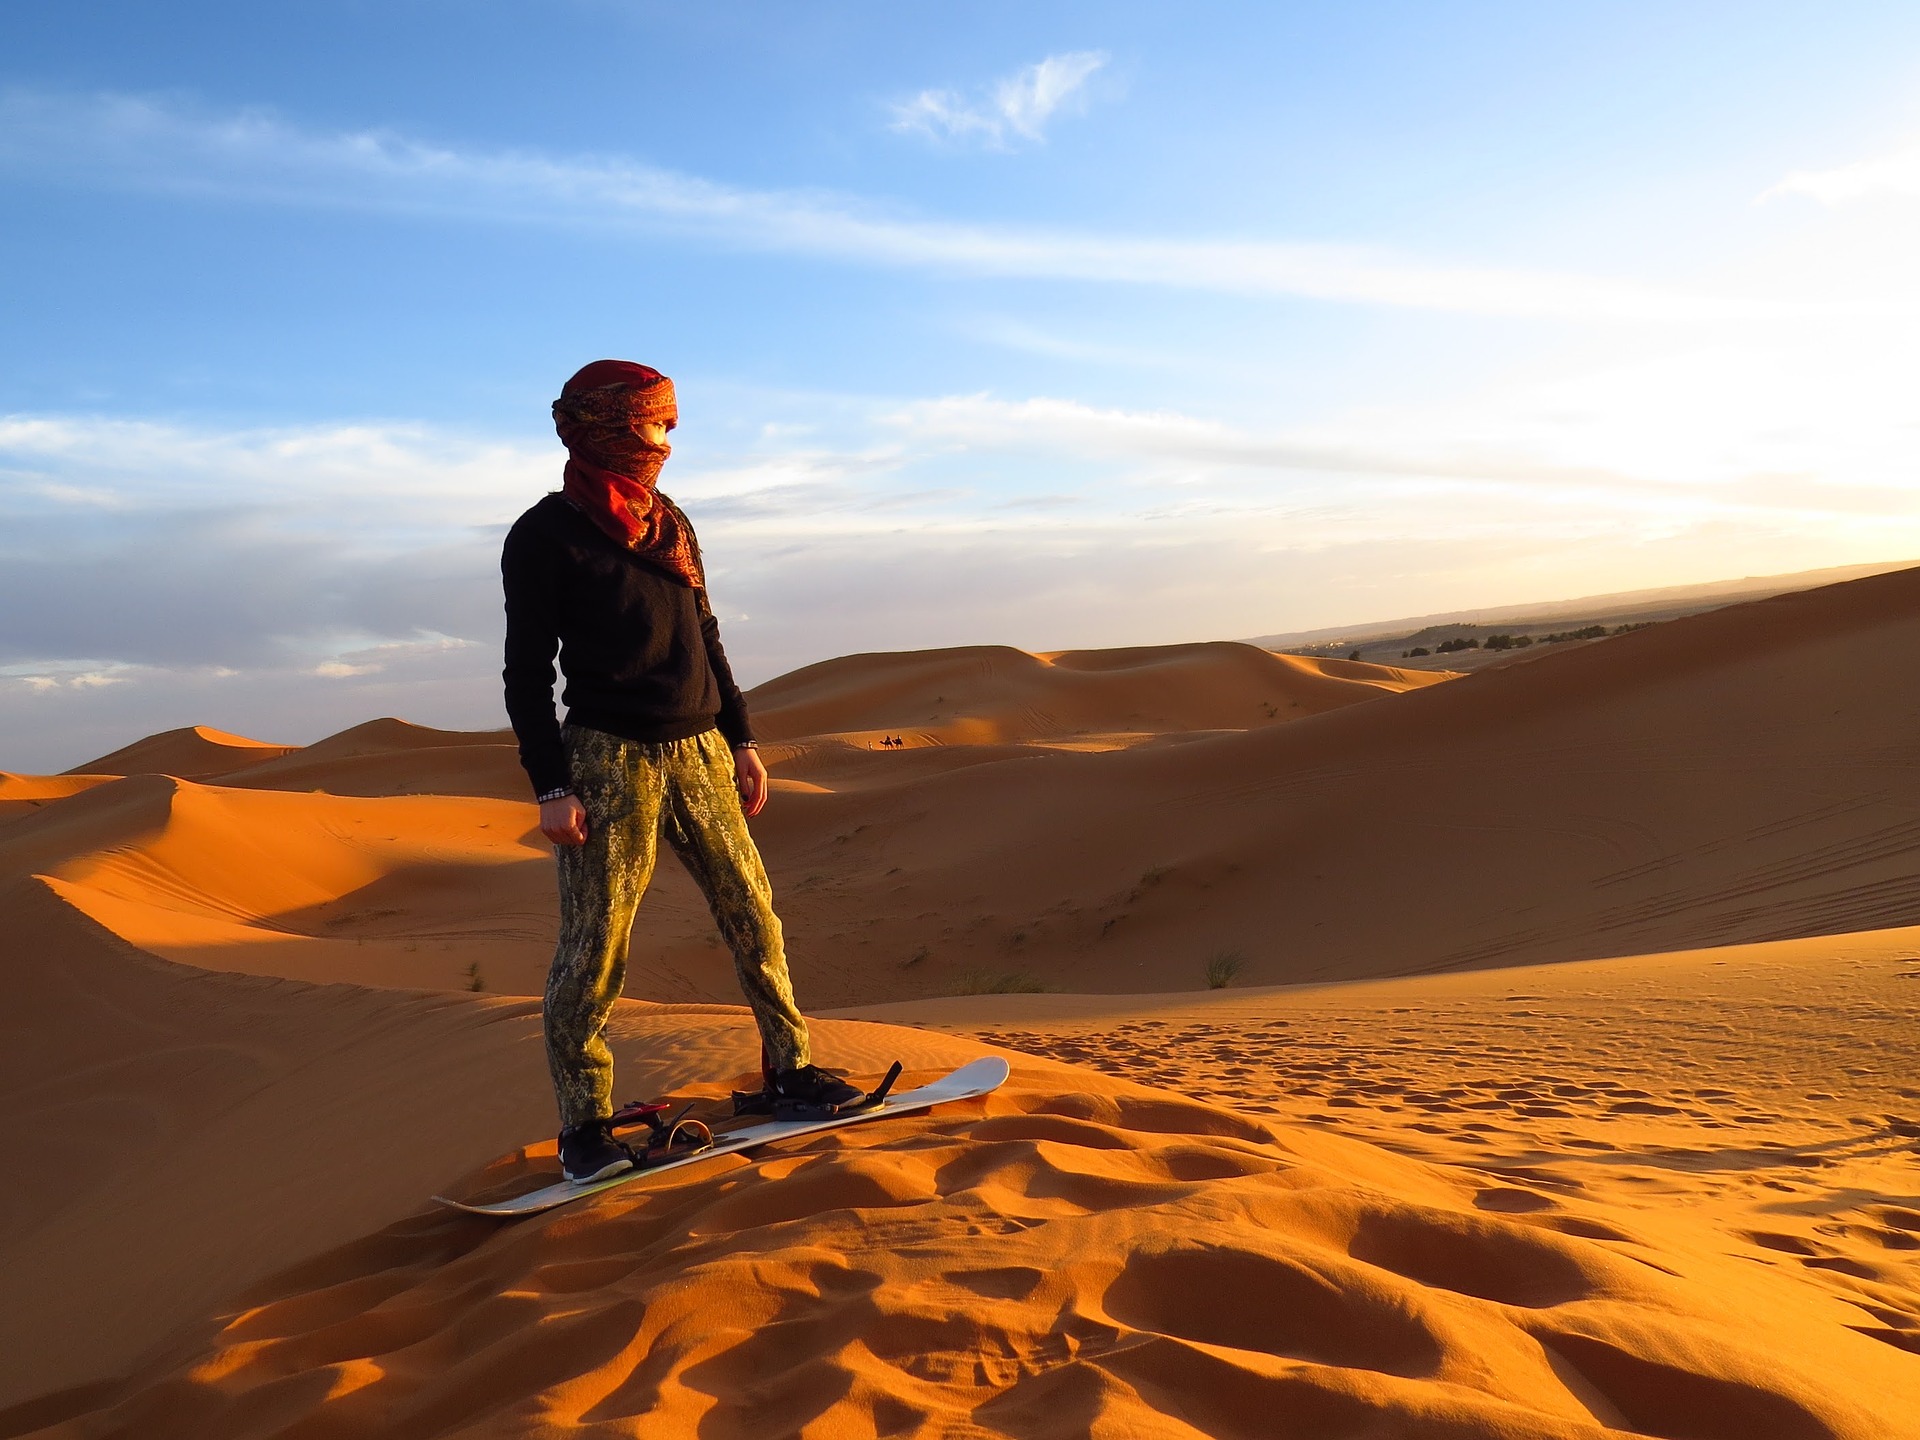 Sandboarding in Morocco